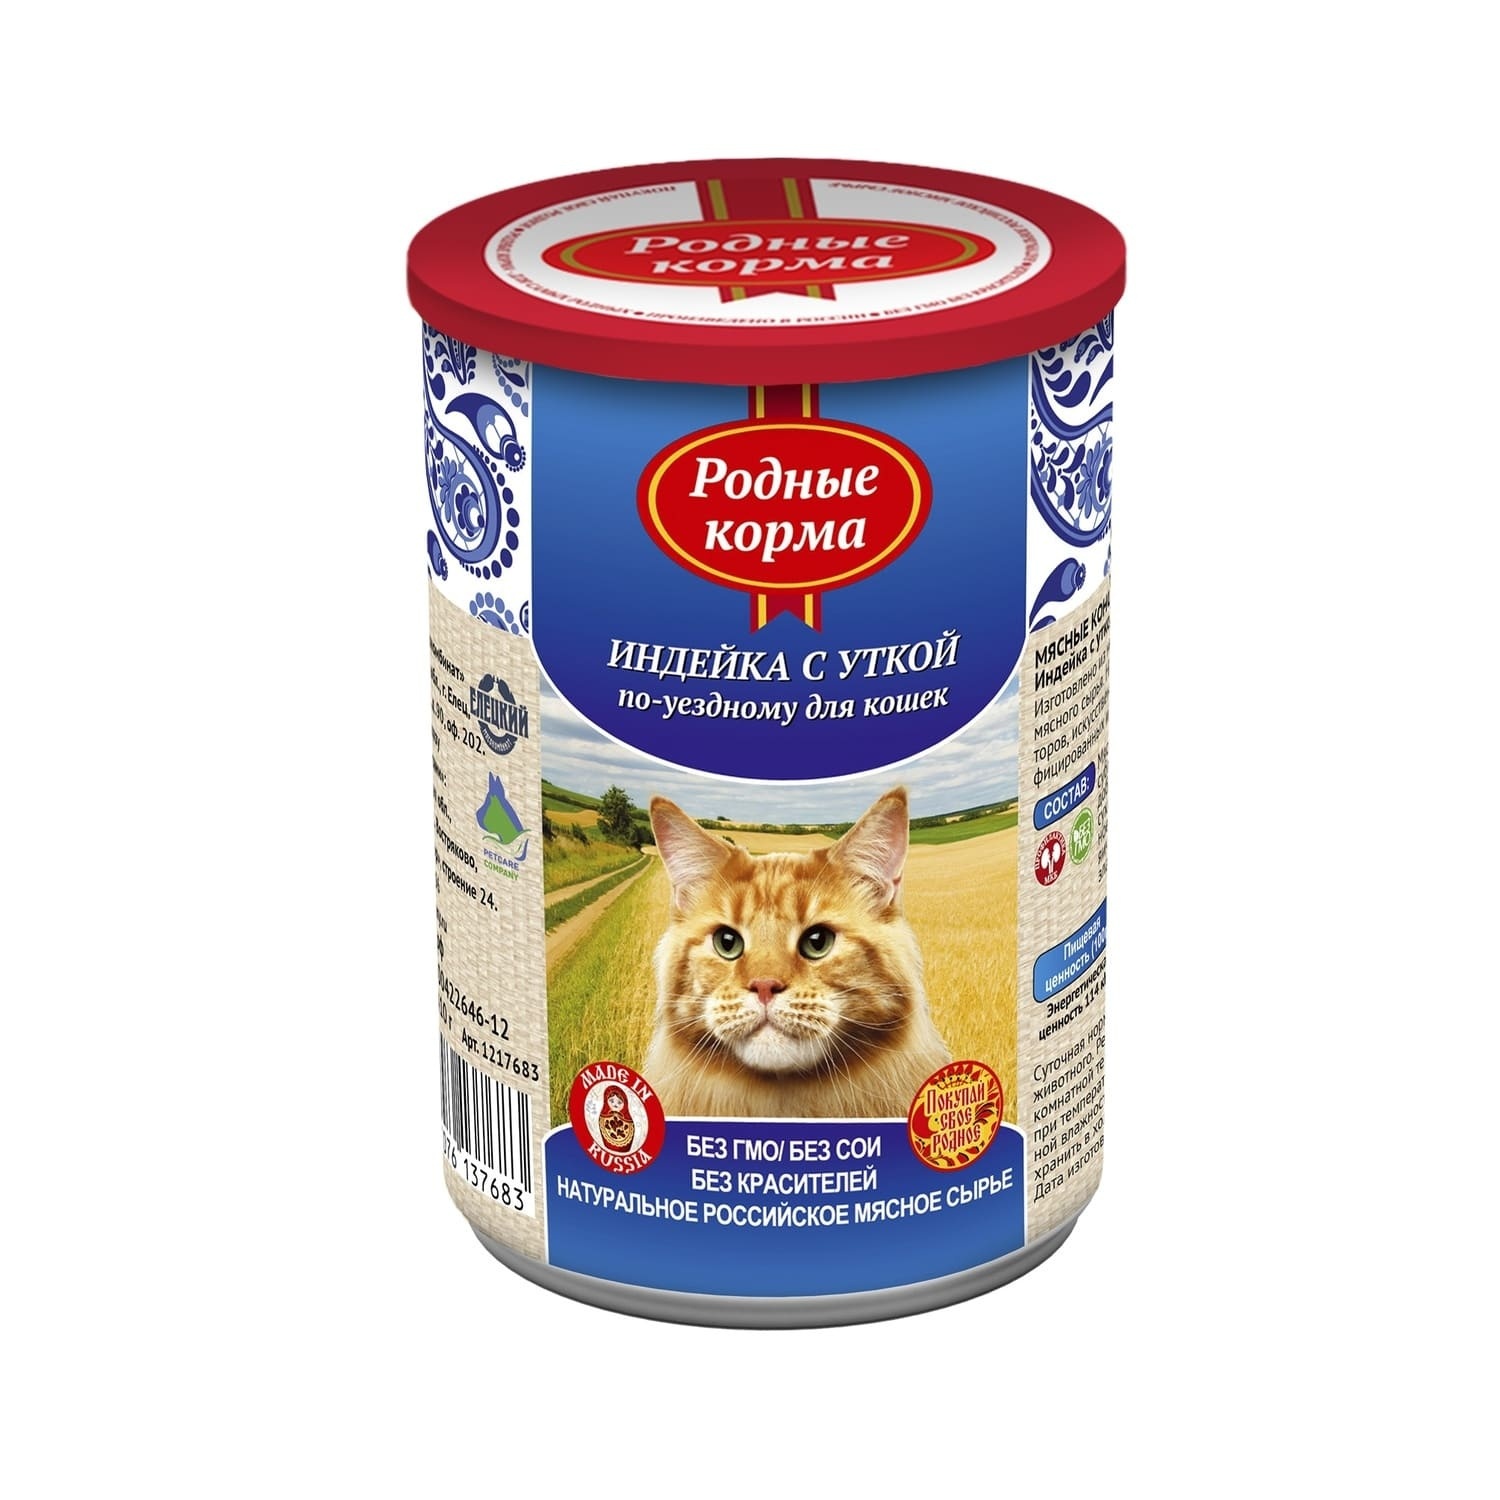 Родные корма Родные корма консервы для кошек, индейка с уткой по-уездному (410 г) цена и фото